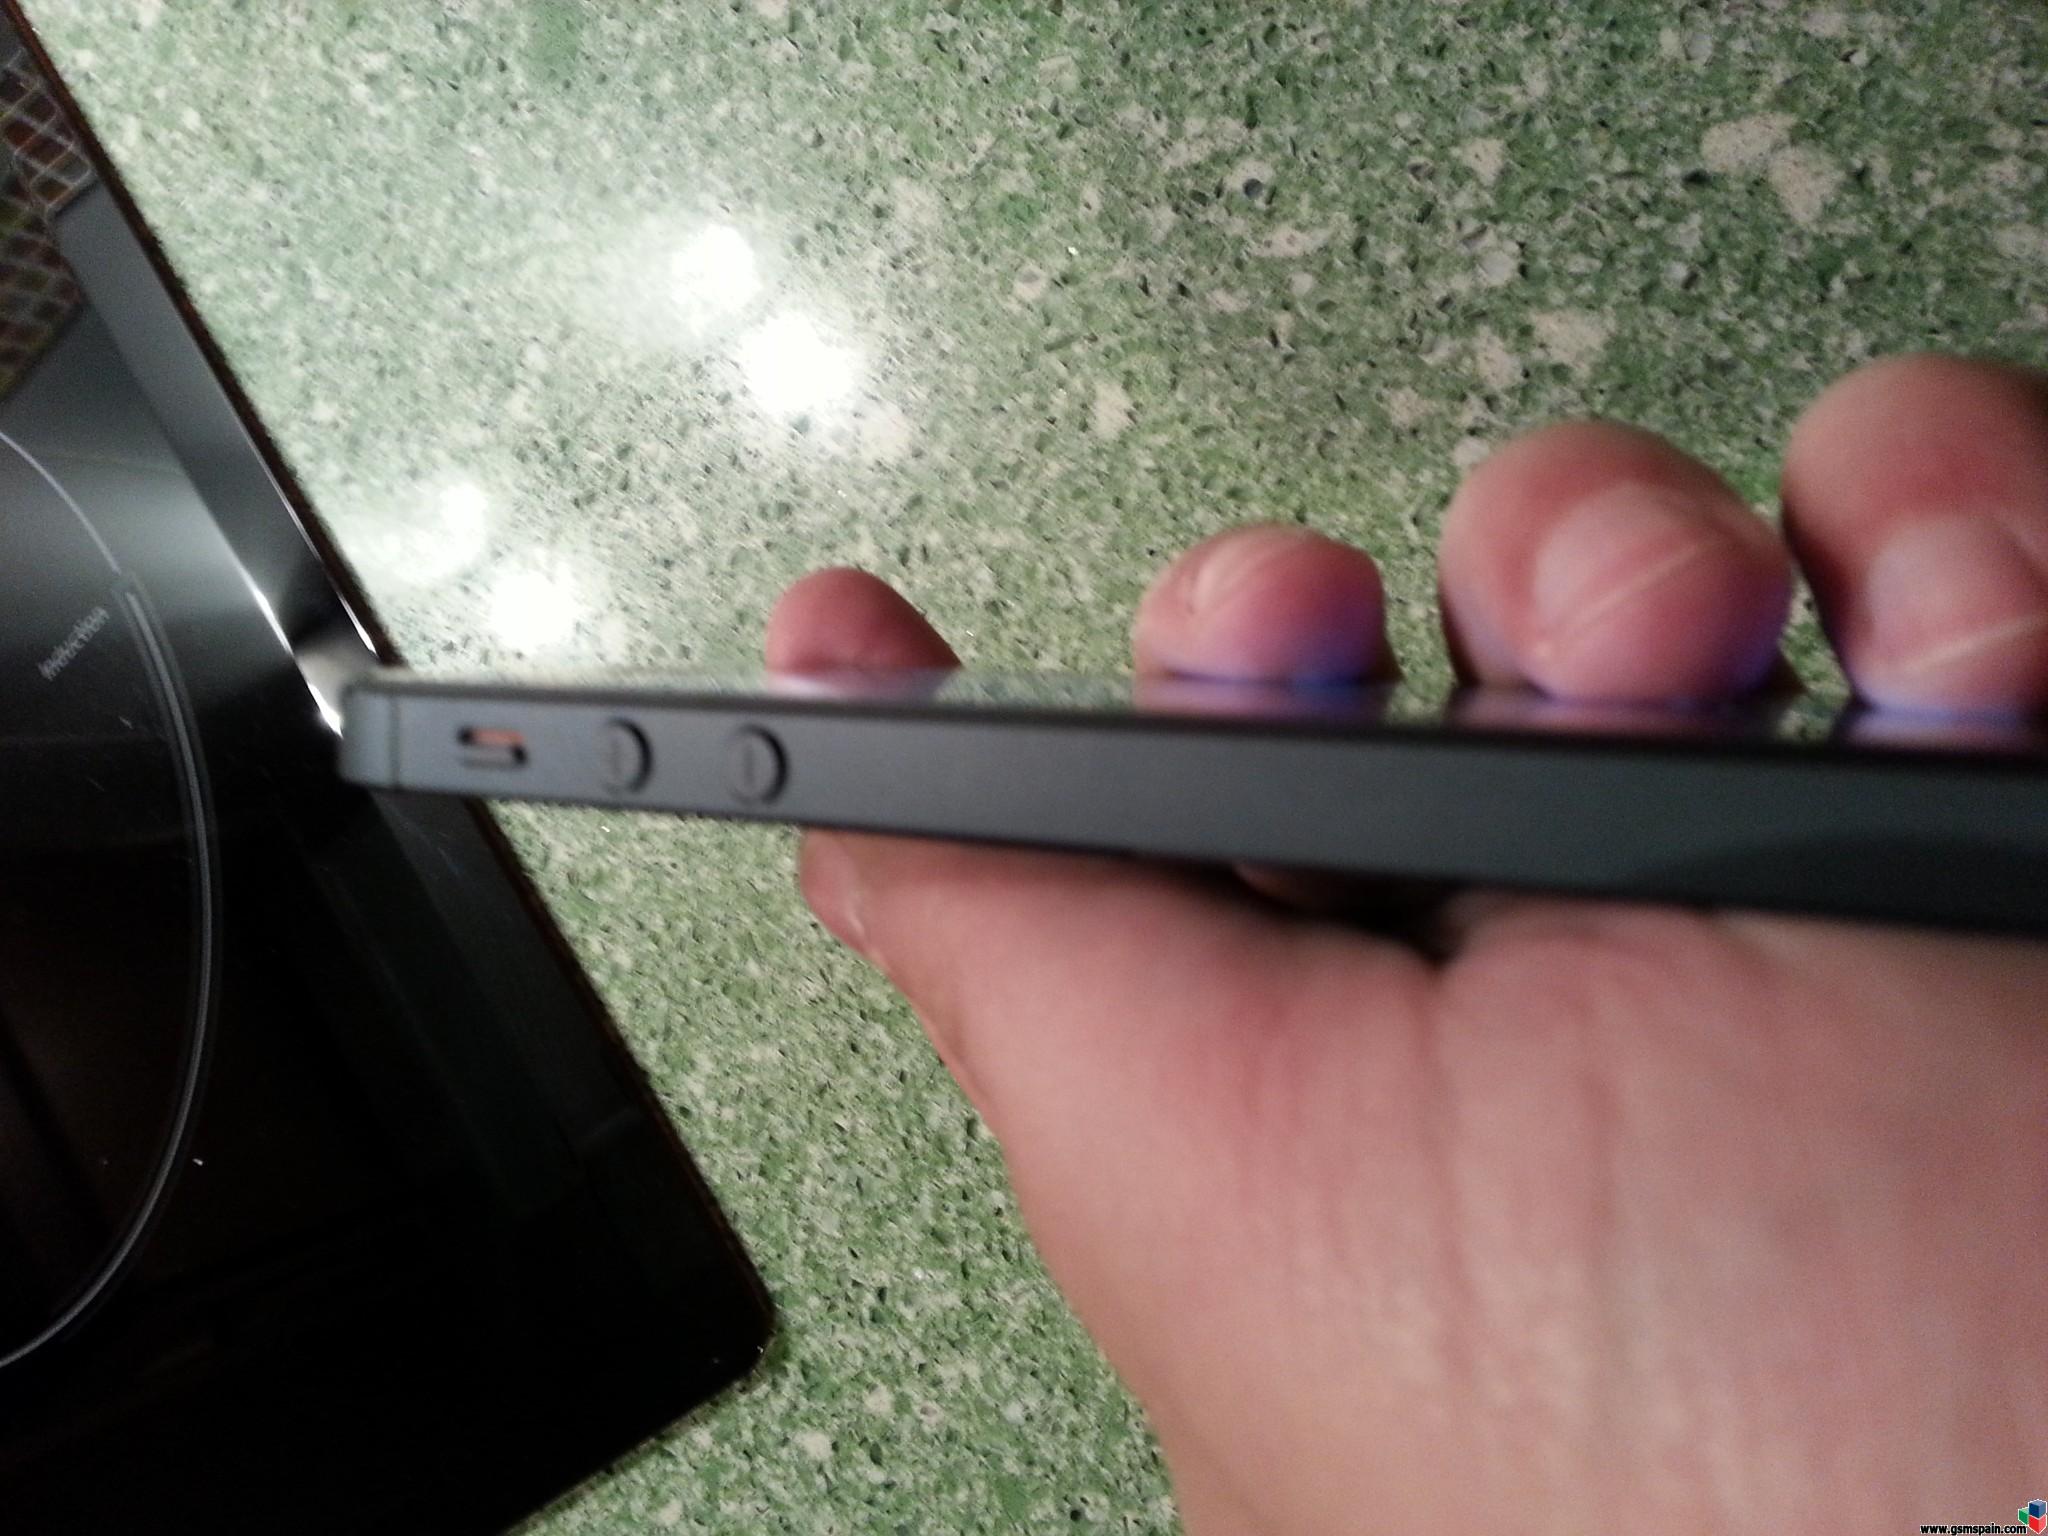 [VENDO] Iphone 5 Negro 16 Gb + Applecare